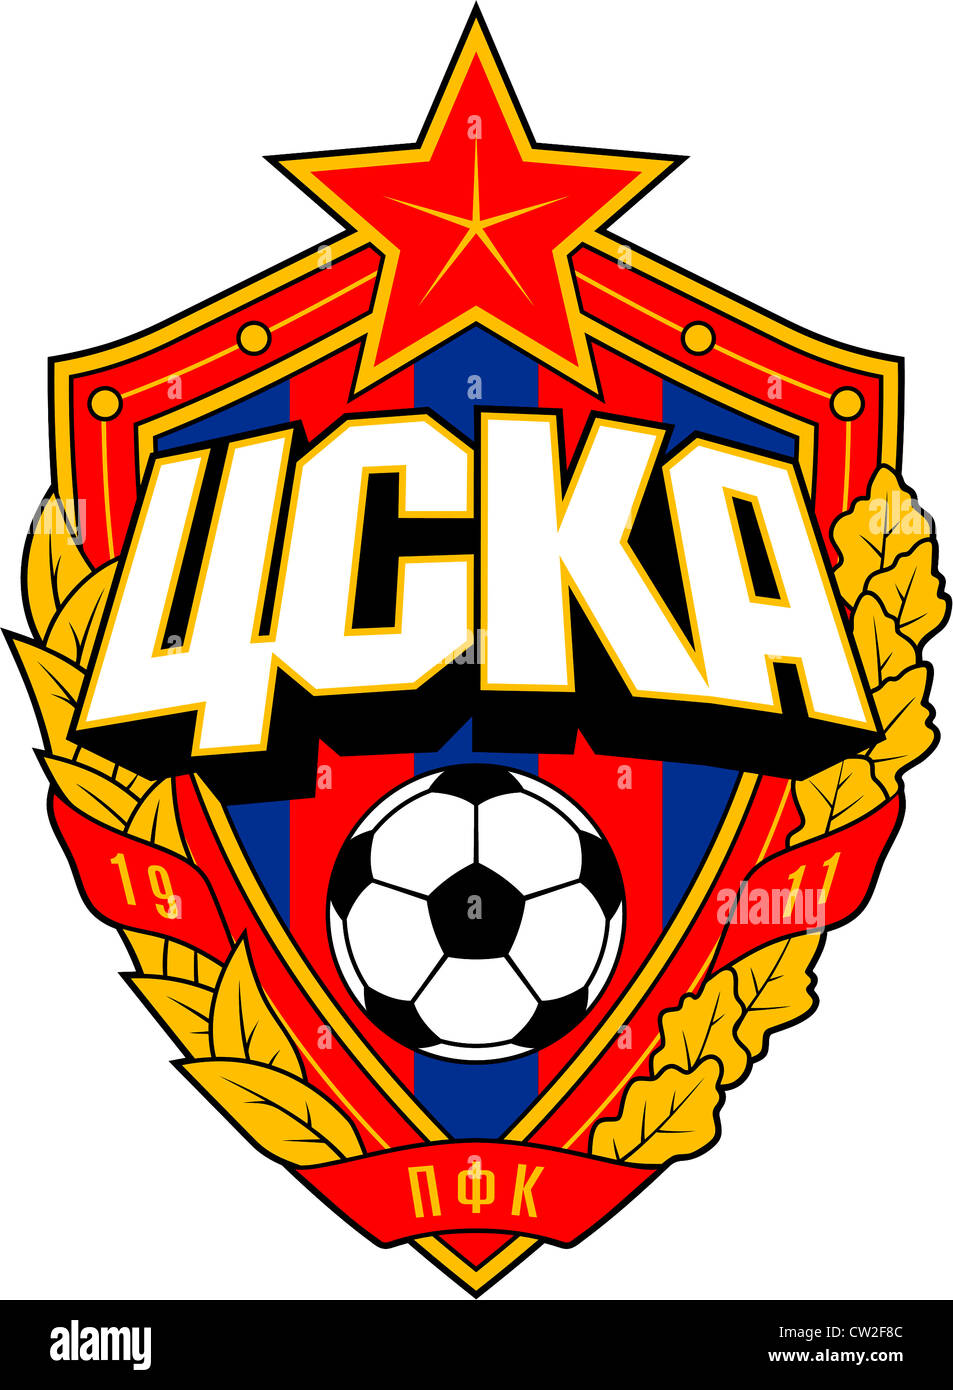 Logo of Russian football team ZSKA Moscow. Stock Photo